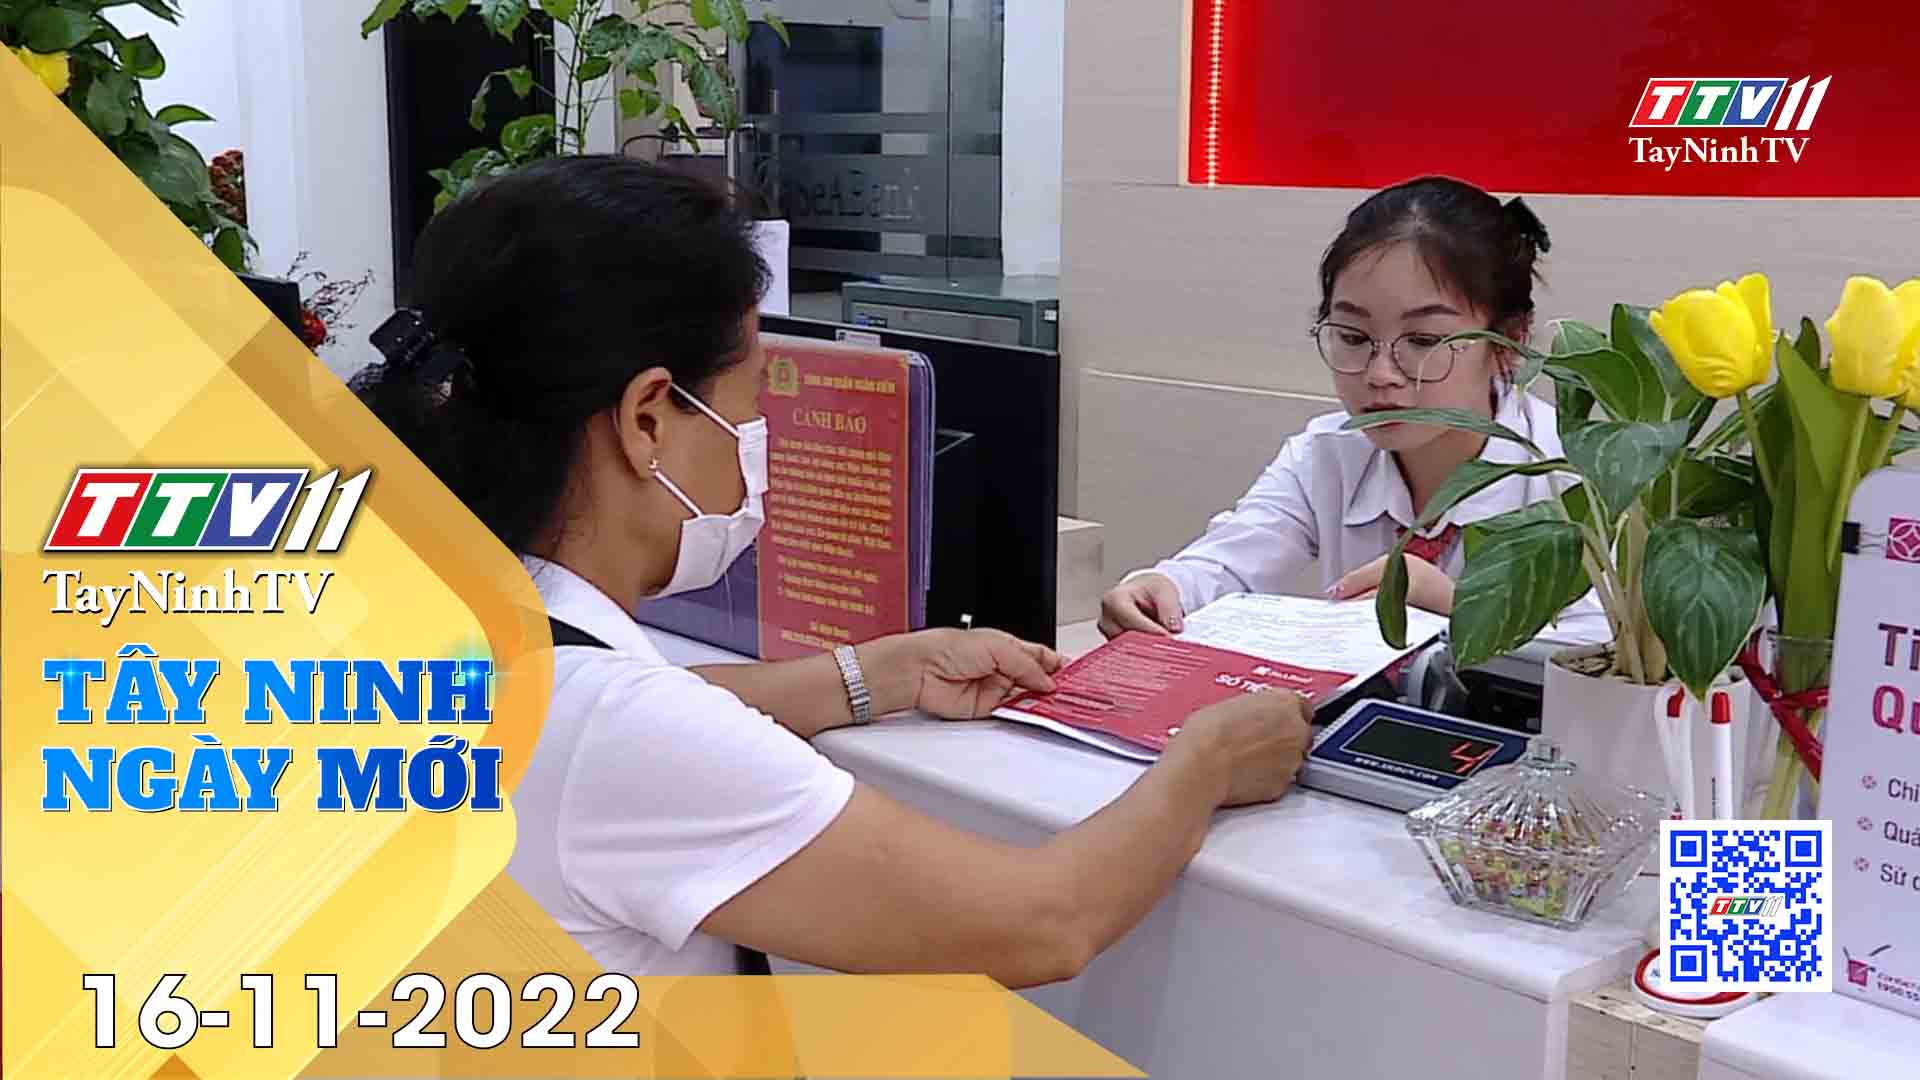 Tây Ninh ngày mới 16-11-2022 | Tin tức hôm nay | TayNinhTV